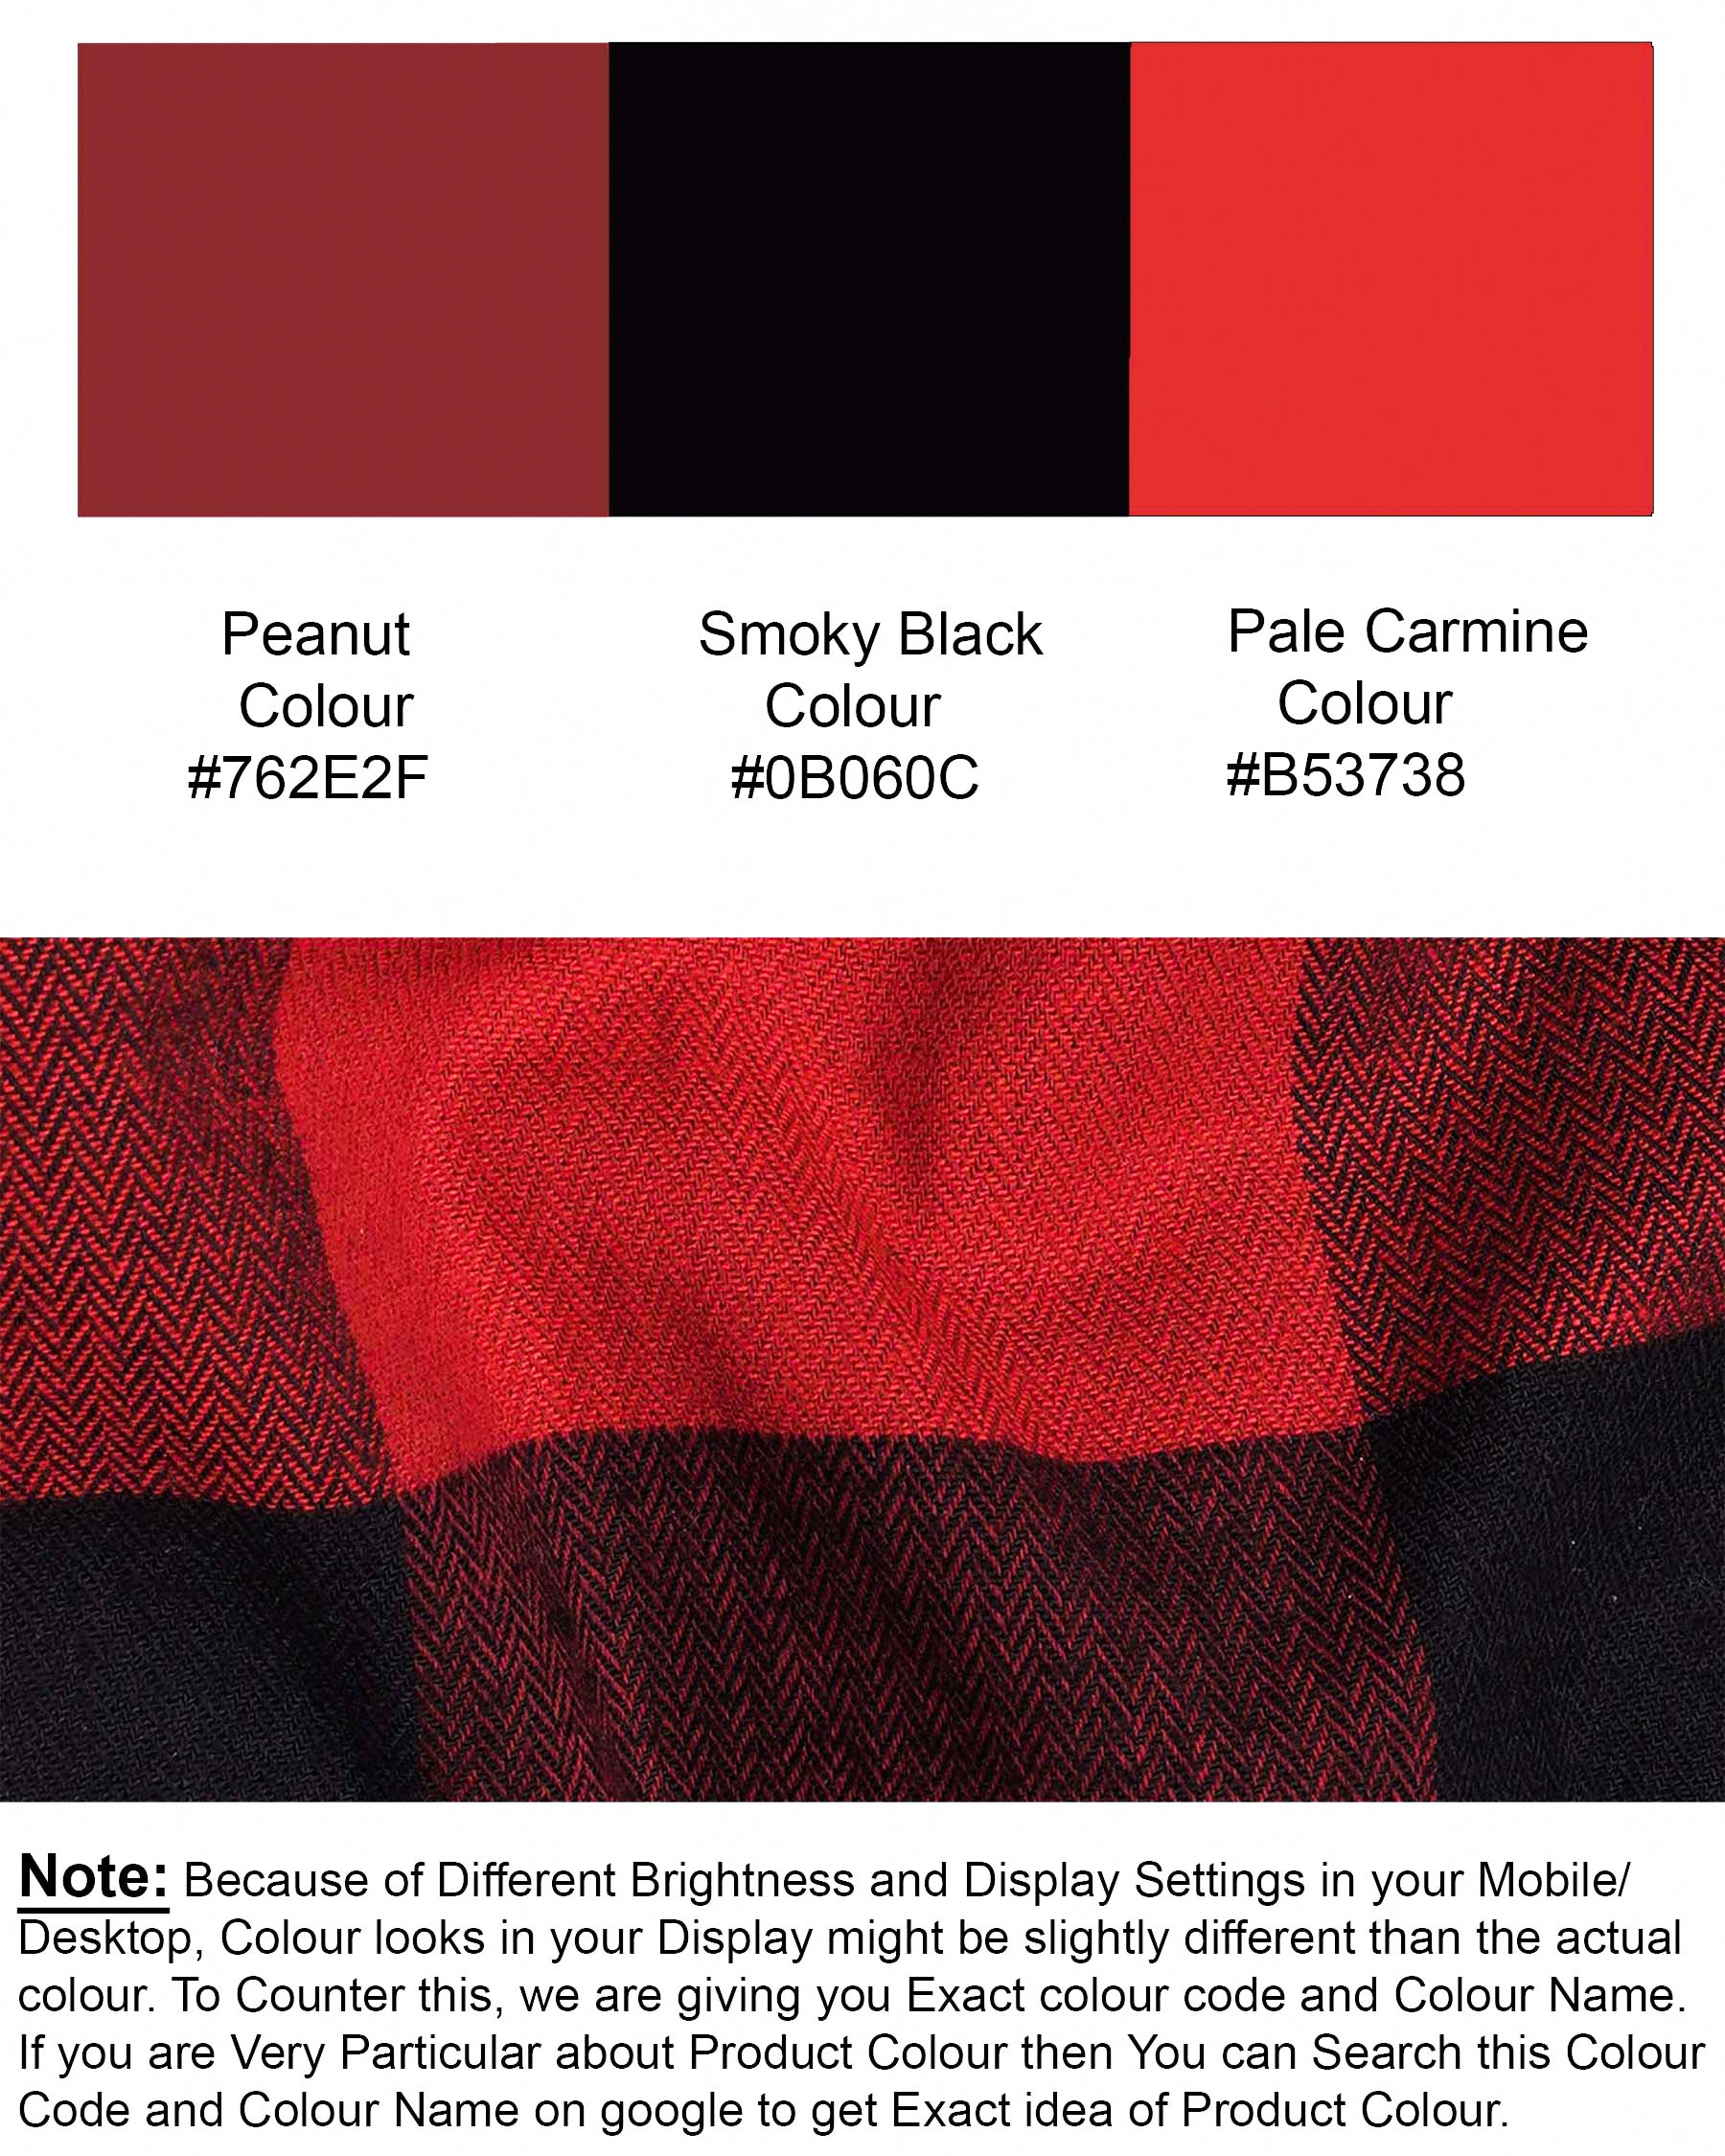 Peanut with Pale Carmine Red Herringbone Zipper Closure Over Shirt 7367-P95-38, 7367-P95-H-38, 7367-P95-39, 7367-P95-H-39, 7367-P95-40, 7367-P95-H-40, 7367-P95-42, 7367-P95-H-42, 7367-P95-44, 7367-P95-H-44, 7367-P95-46, 7367-P95-H-46, 7367-P95-48, 7367-P95-H-48, 7367-P95-50, 7367-P95-H-50, 7367-P95-52, 7367-P95-H-52